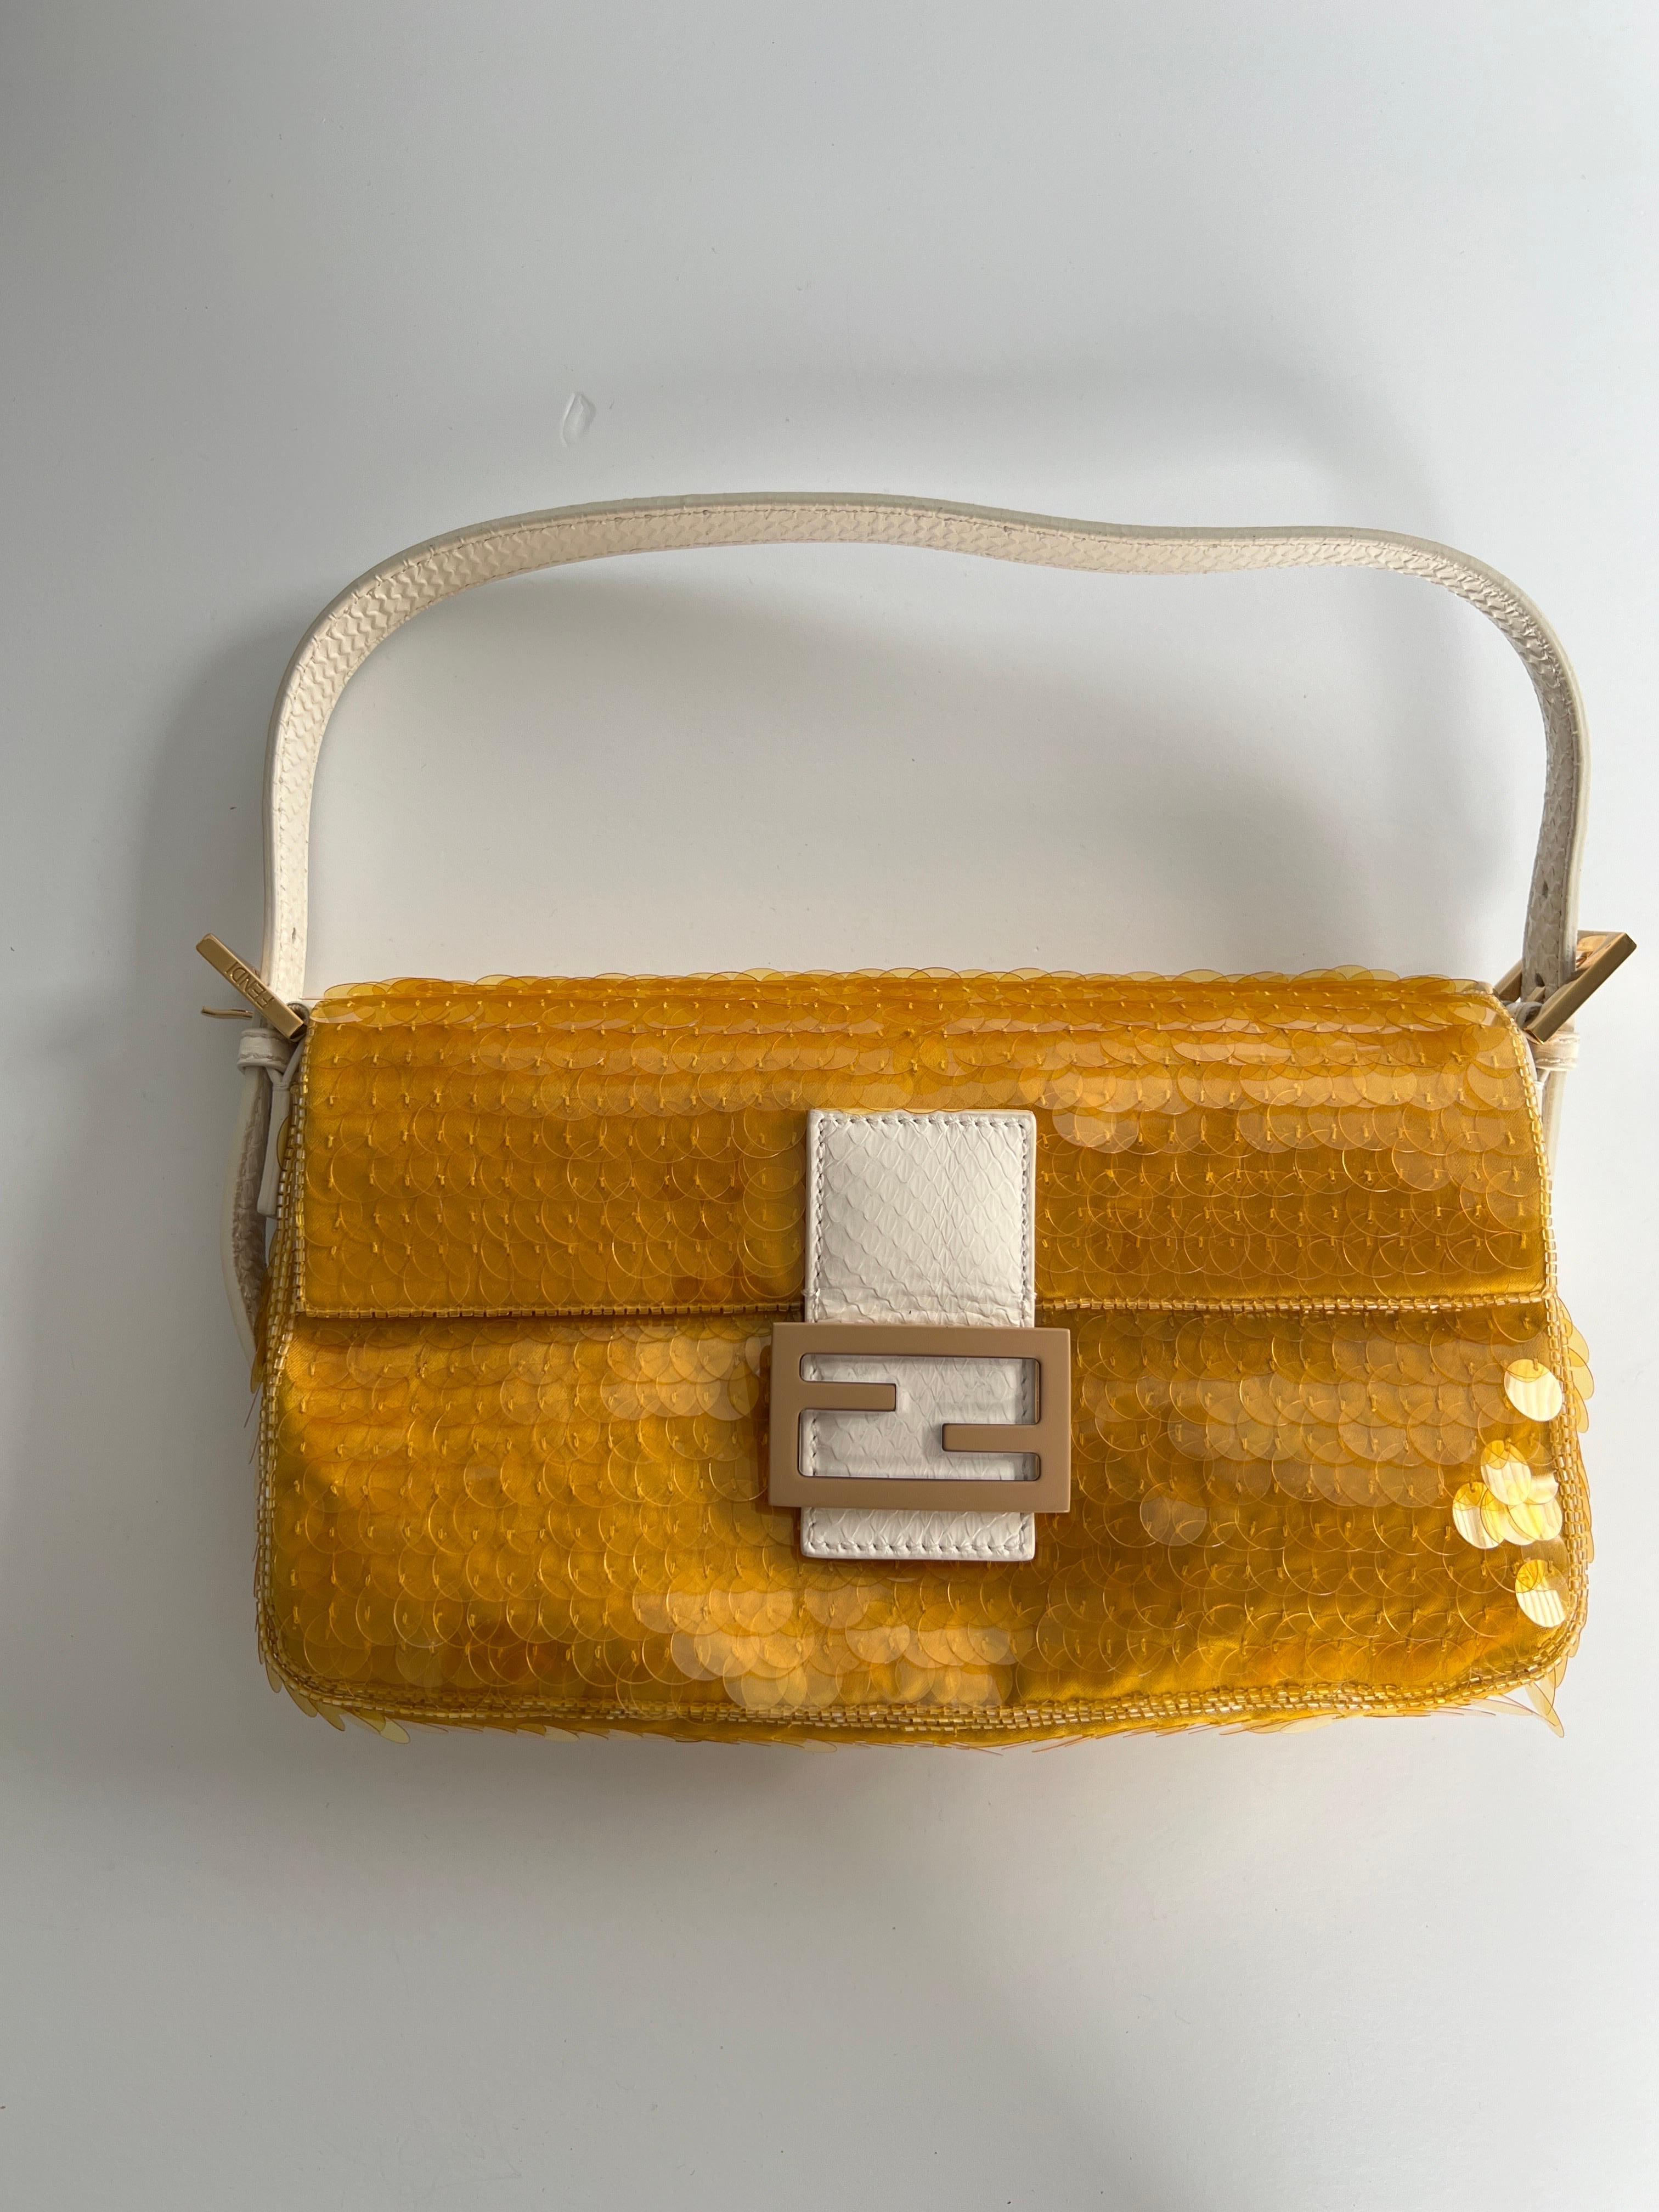 Dies ist eine authentische FENDI Satin Sequin Pailletten Elaphe Plexiglas Baguette 1997 in Giallo und Avorio. Diese Handtasche ist aus Stoff gefertigt und mit gelben Pailletten besetzt. Die Tasche hat einen weißen, mit Python bedruckten